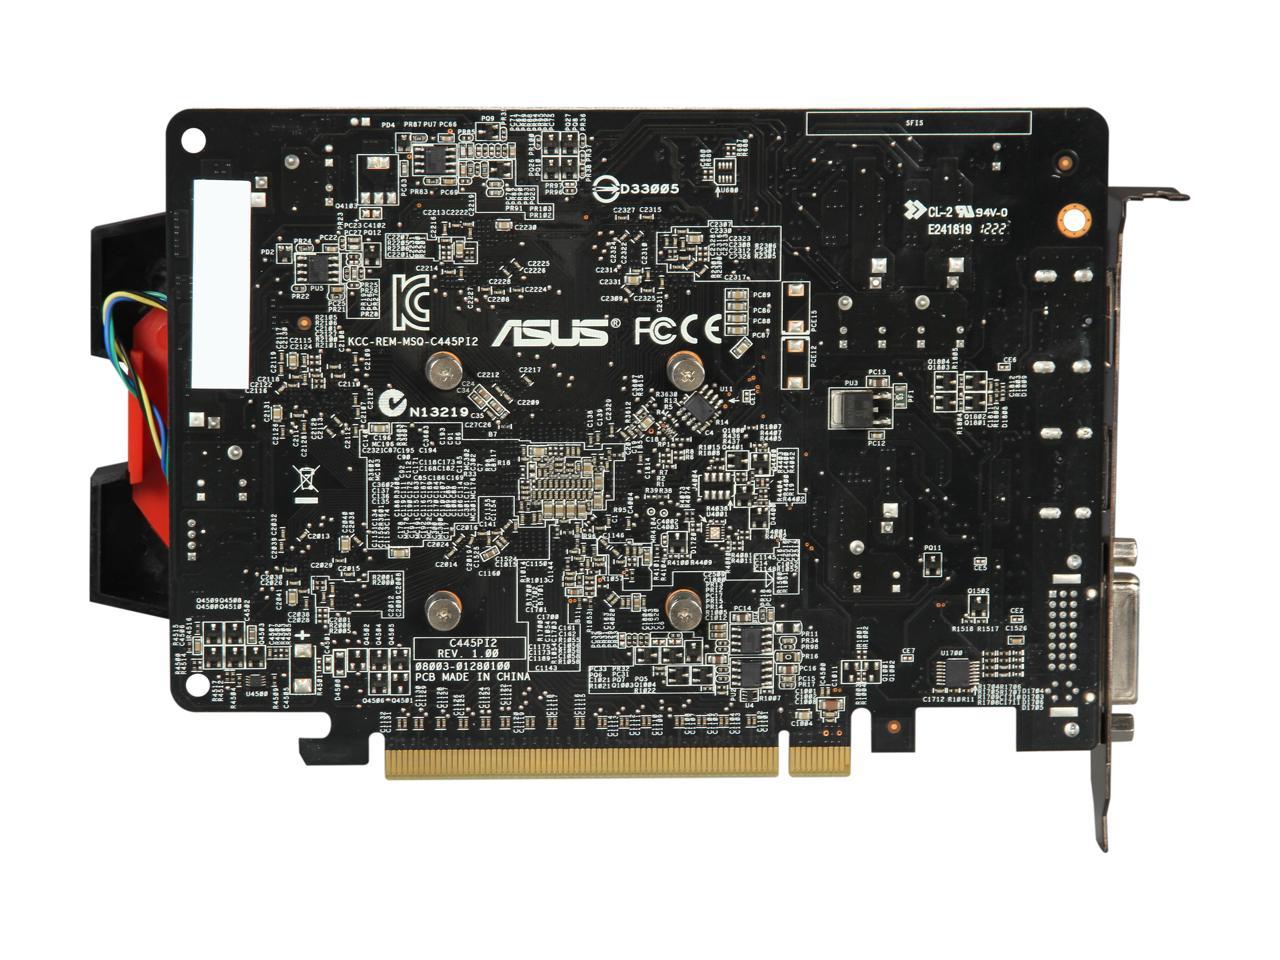 ASUS Radeon HD 7750 DirectX 11 HD7750-T-1GD5 1GB 128-Bit GDDR5 PCI Express 3.0 x16 HDCP Ready Video Card